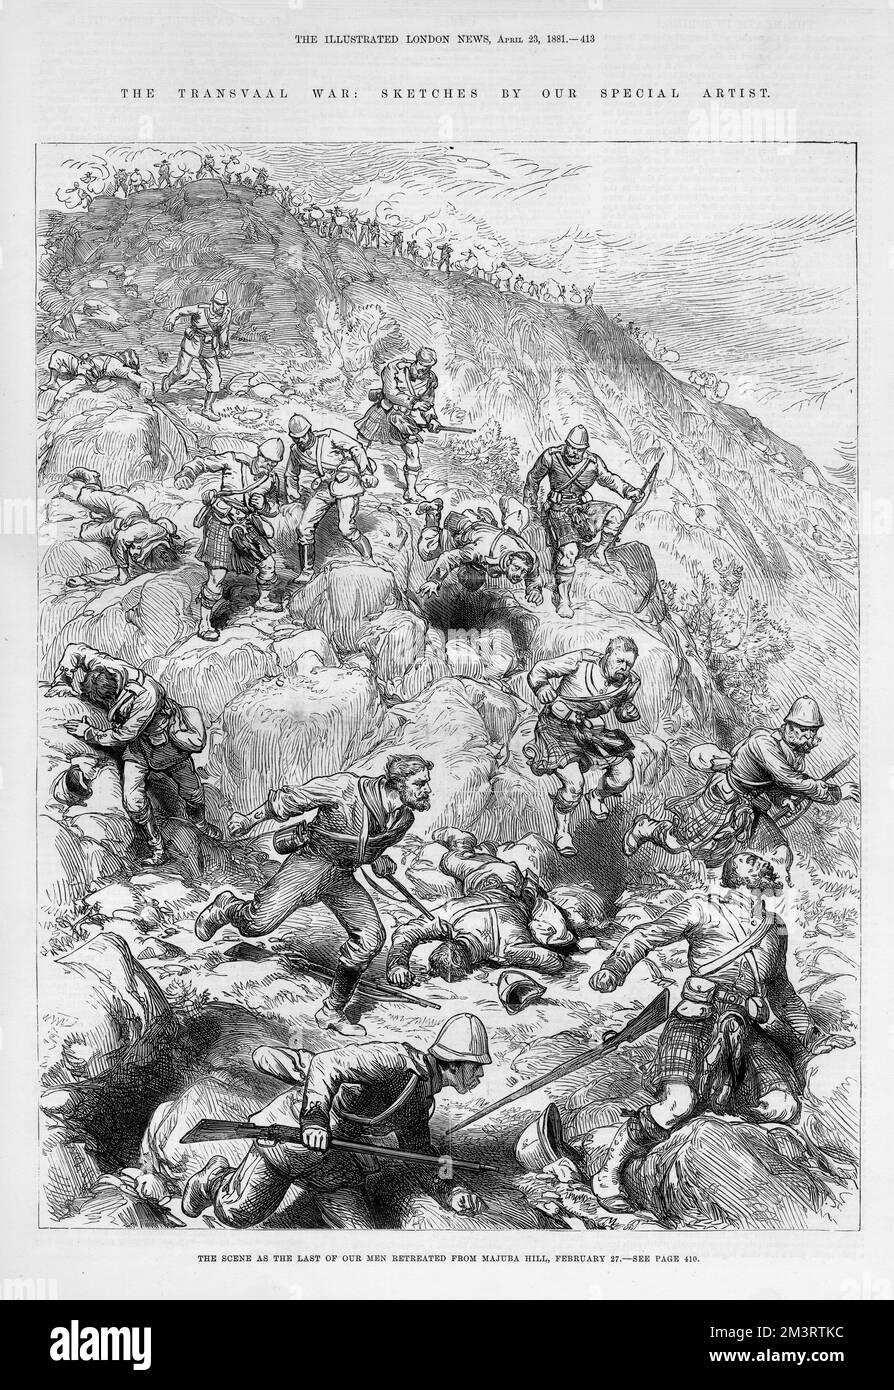 La retraite (vol!) Des Highlanders de Majuba Hill. La bataille de Majuba Hill (près de Volksrust, Afrique du Sud) fut la bataille finale et décisive de la première Guerre des Boers. C'était une victoire retentissante pour les Boers et la bataille est considérée comme l'une des plus humiliantes défaites de l'armée britannique. 1881 Banque D'Images